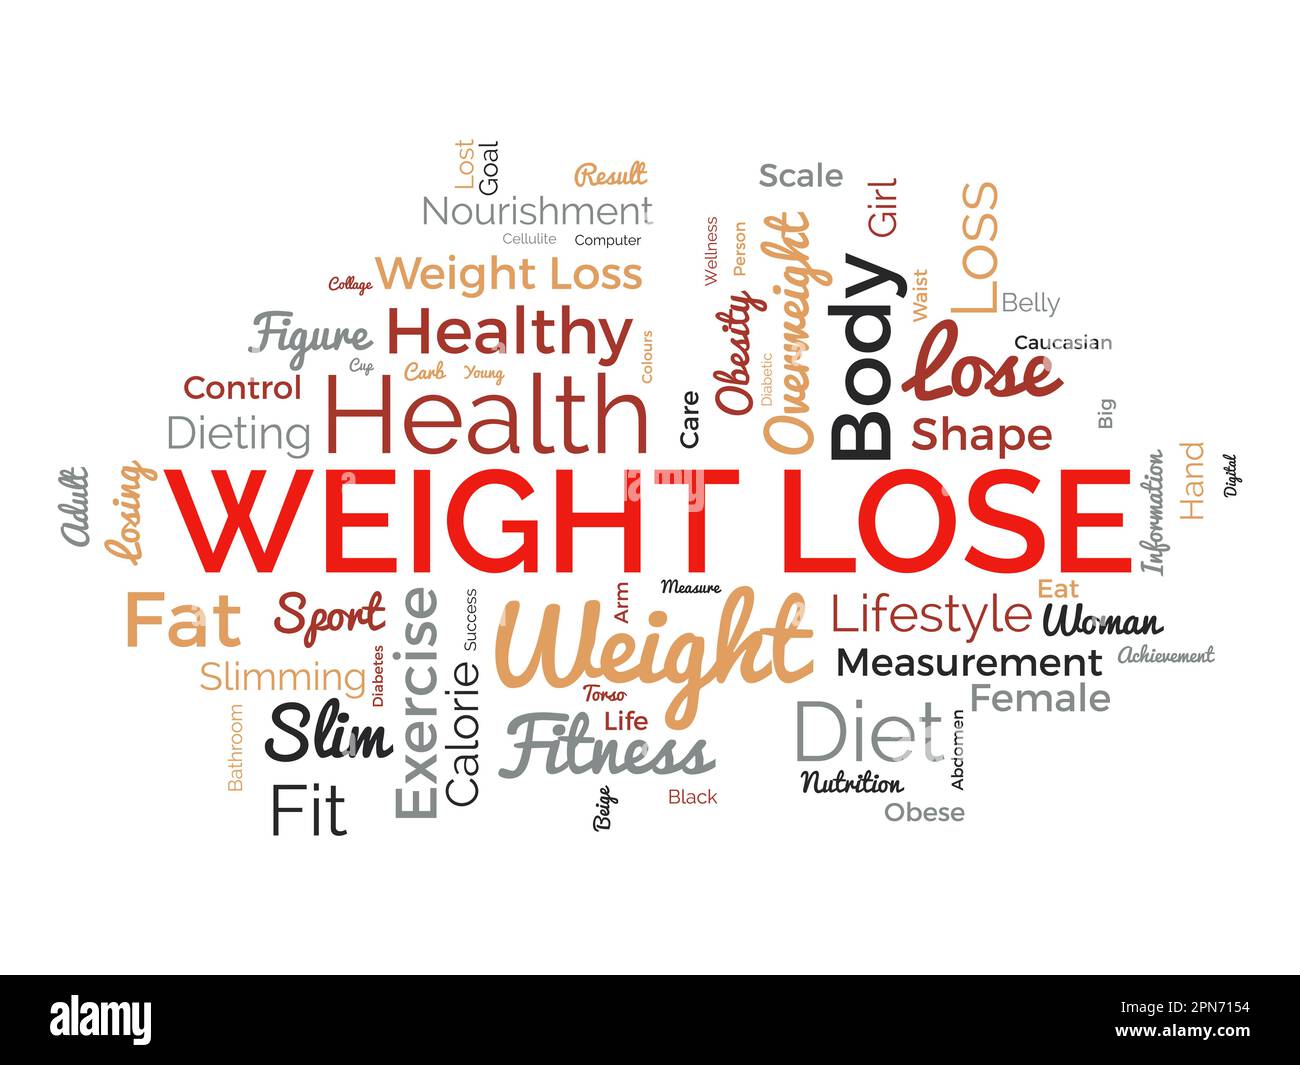 Wortwolken-Hintergrundkonzept für Gewichtsverlust. Diät mit gesunden Lebensmitteln für Übergewicht zu verlieren oder ein gesundes Leben. vektordarstellung. Stock Vektor